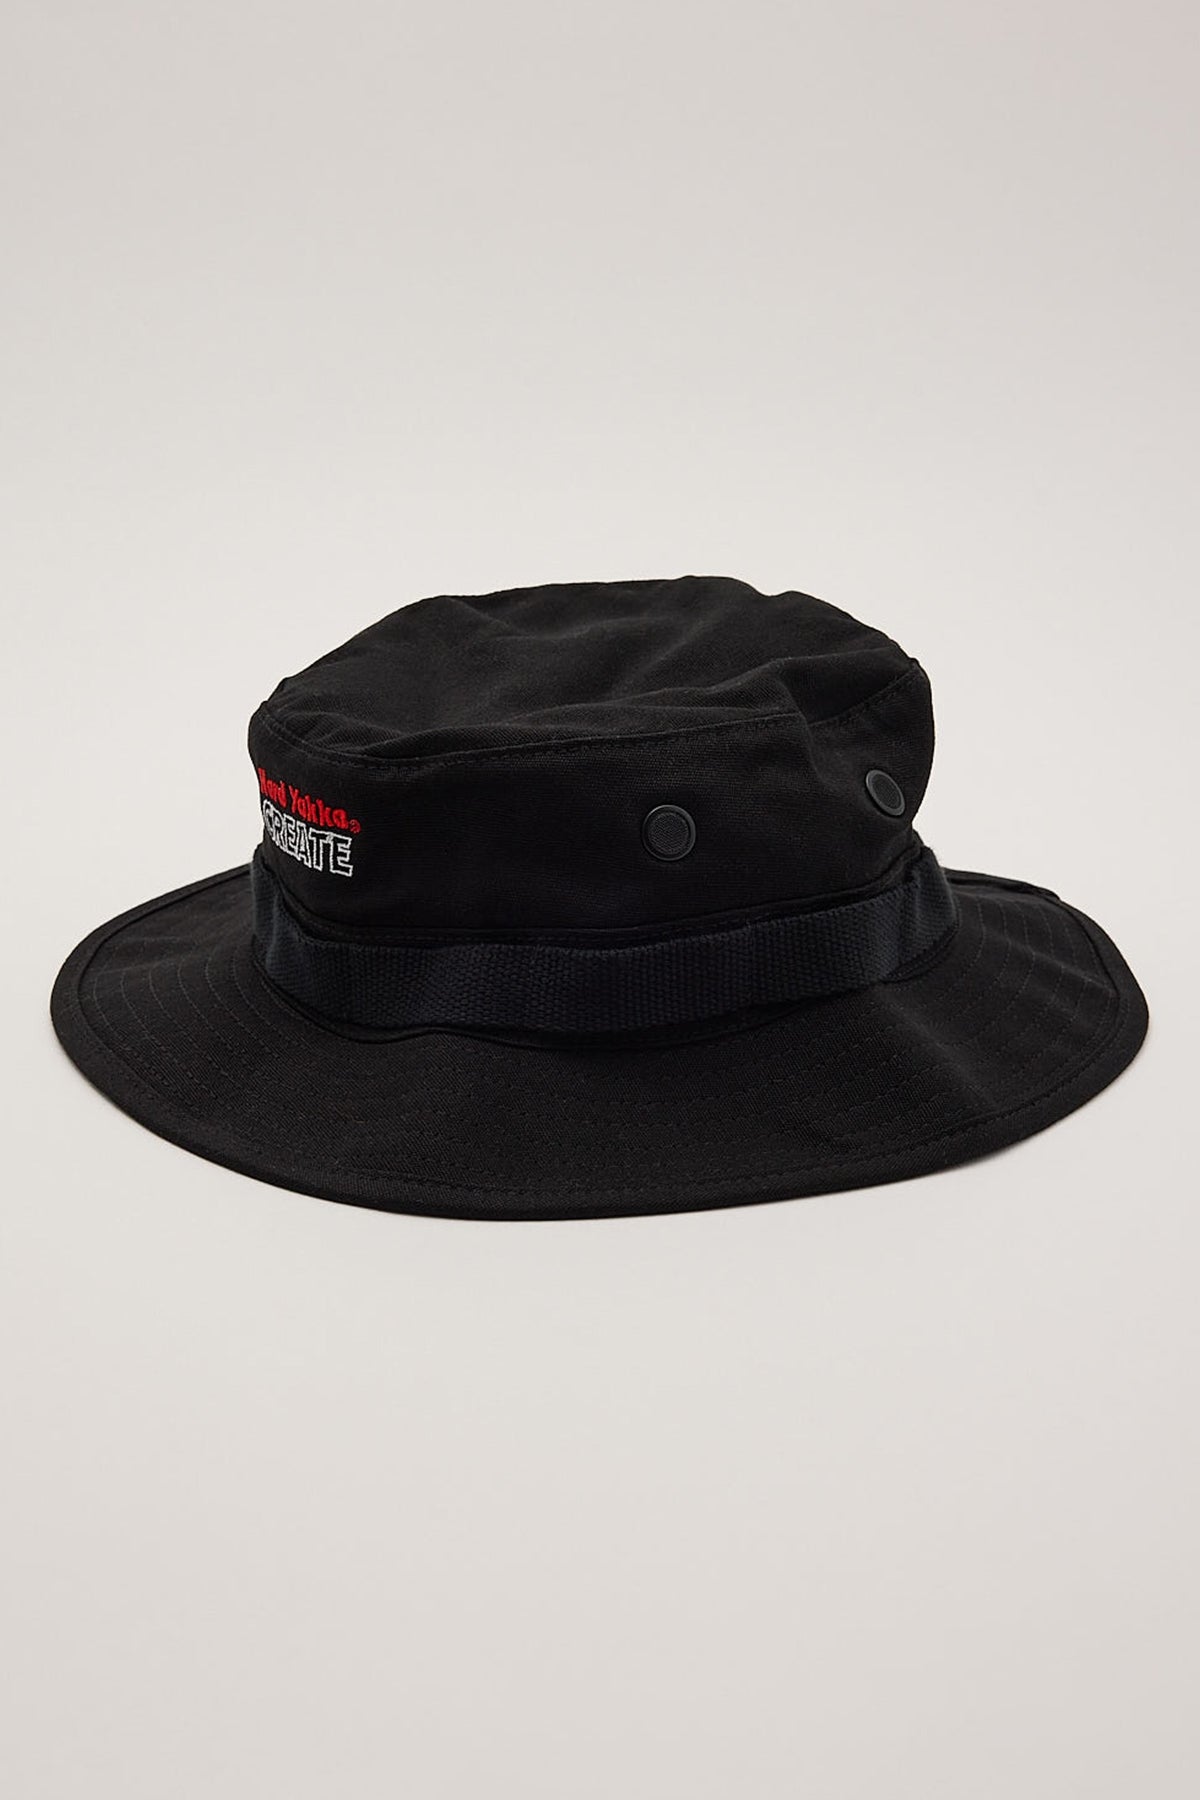 Thrills HYC Boonie Hat Black